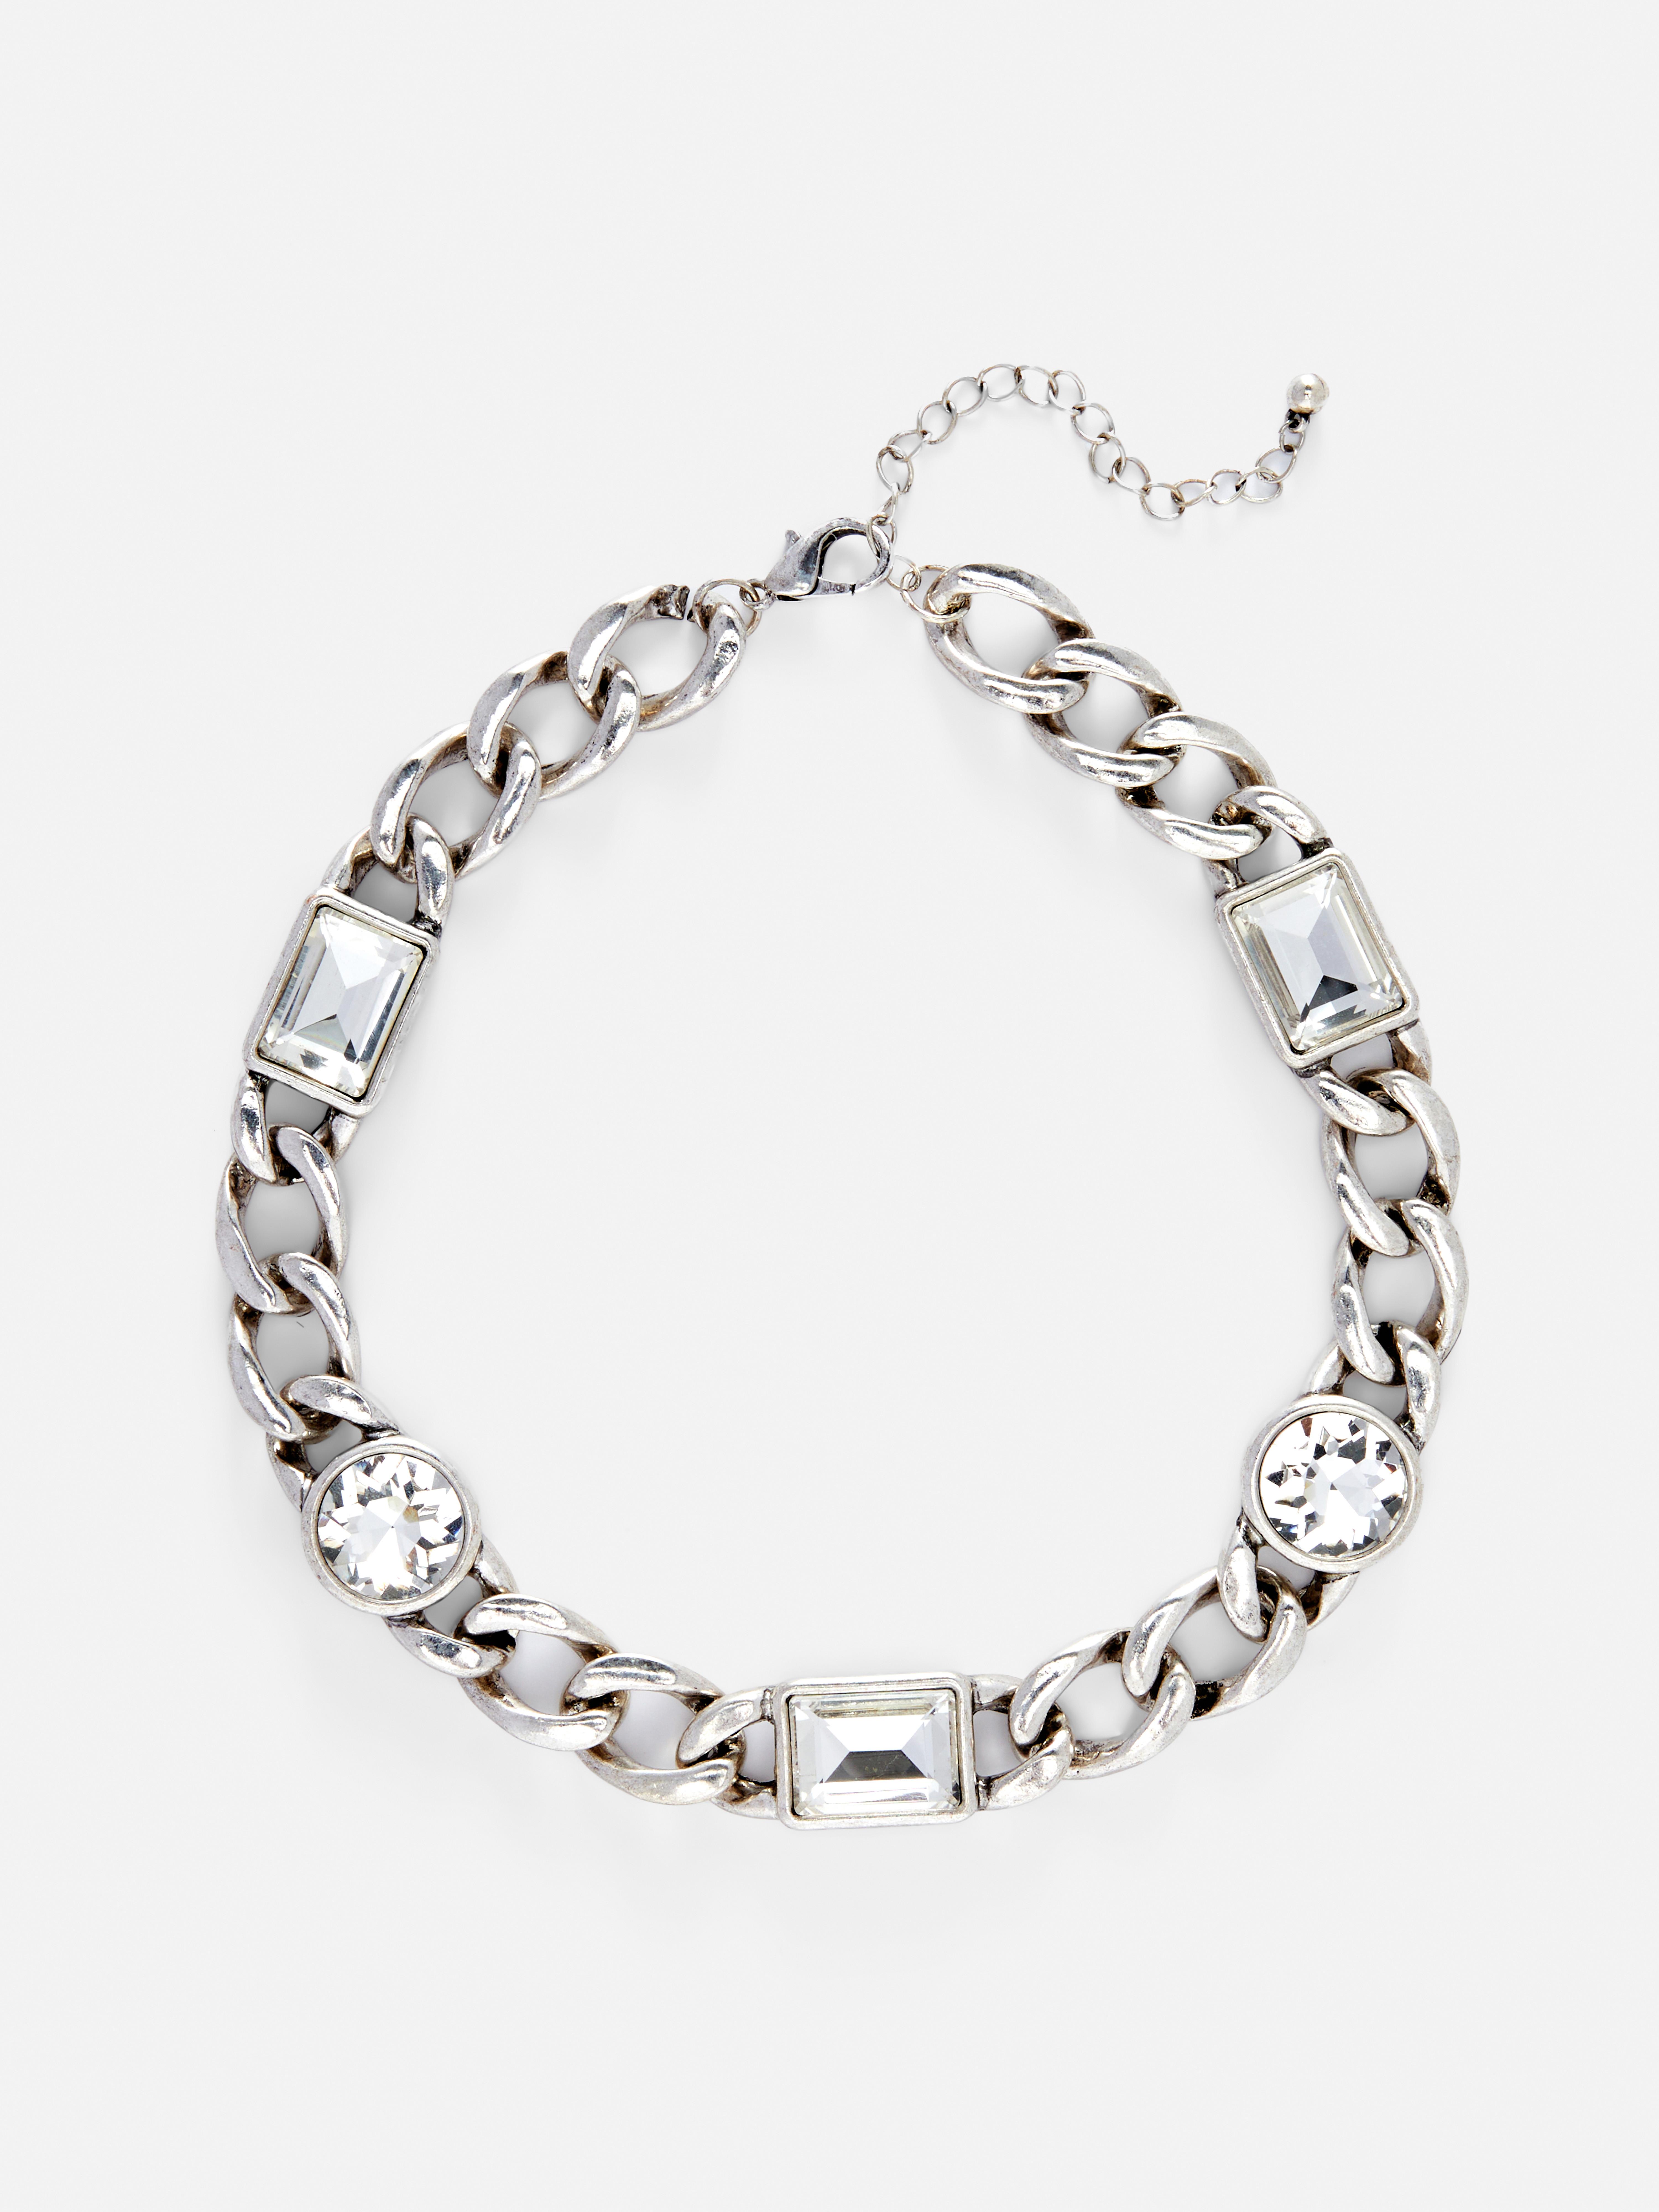 Rita Ora Chunky Chain Necklace